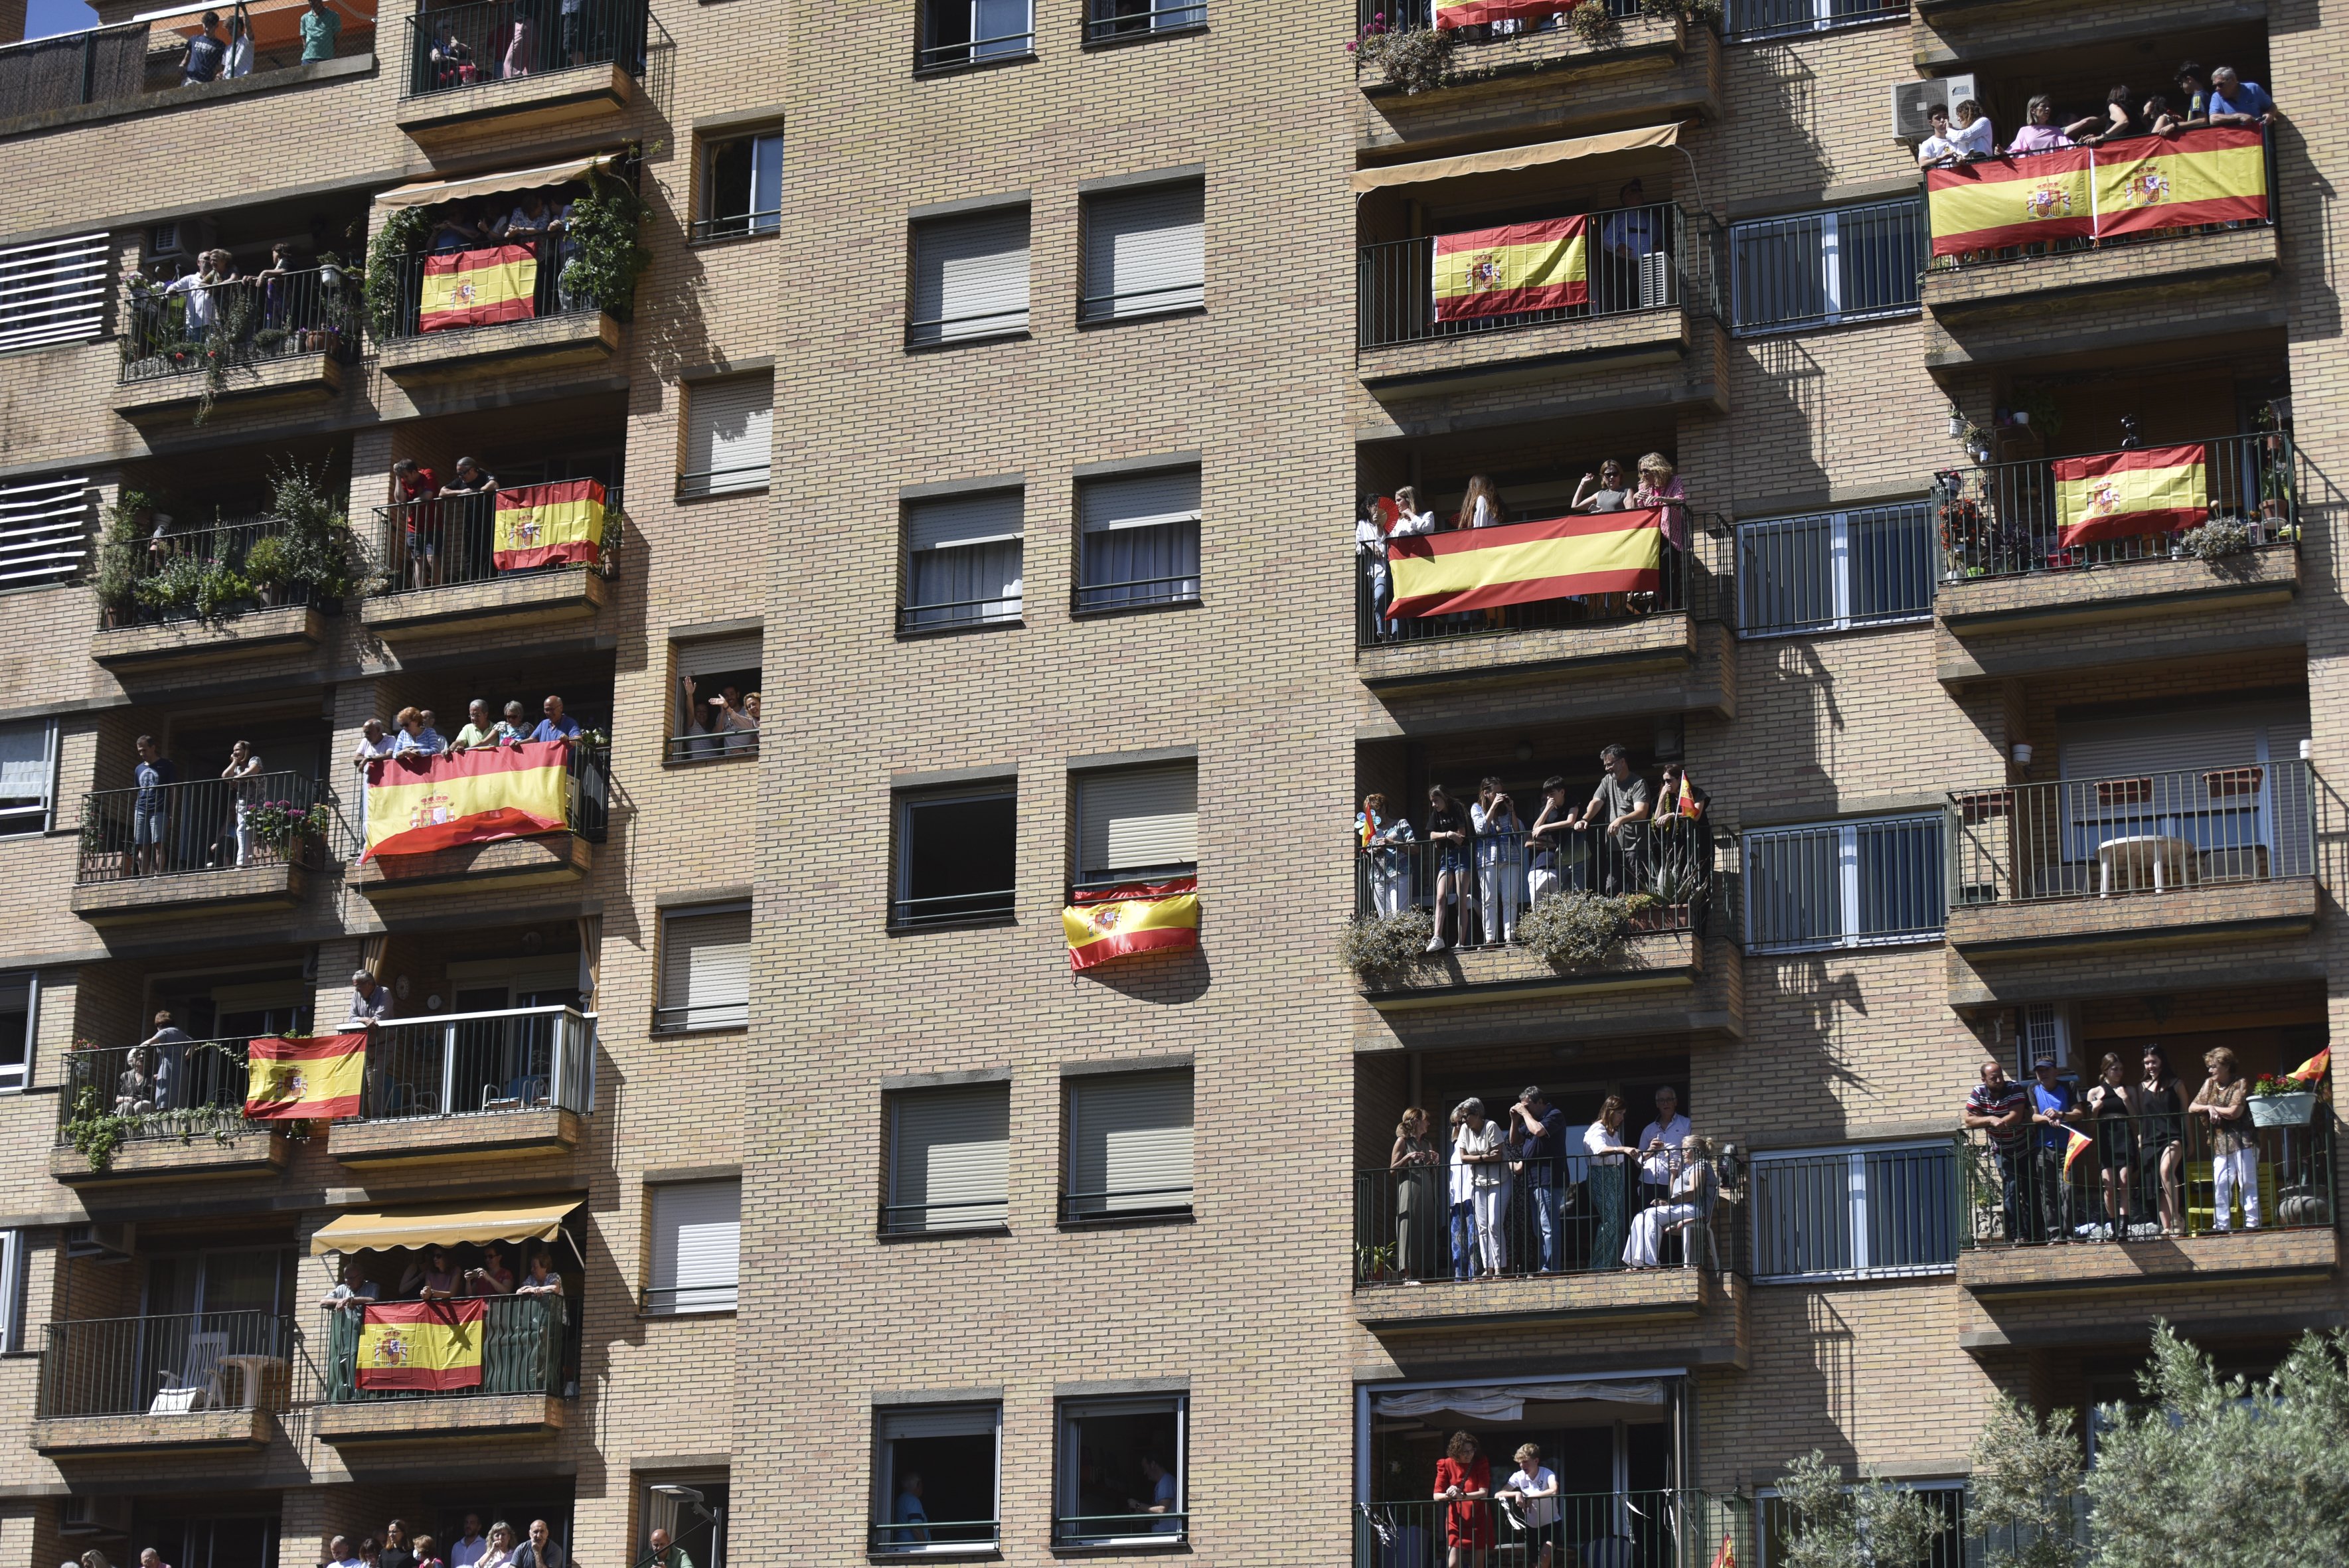 ¿Qué piensan los andaluces de Carles Puigdemont y el 25% de castellano?